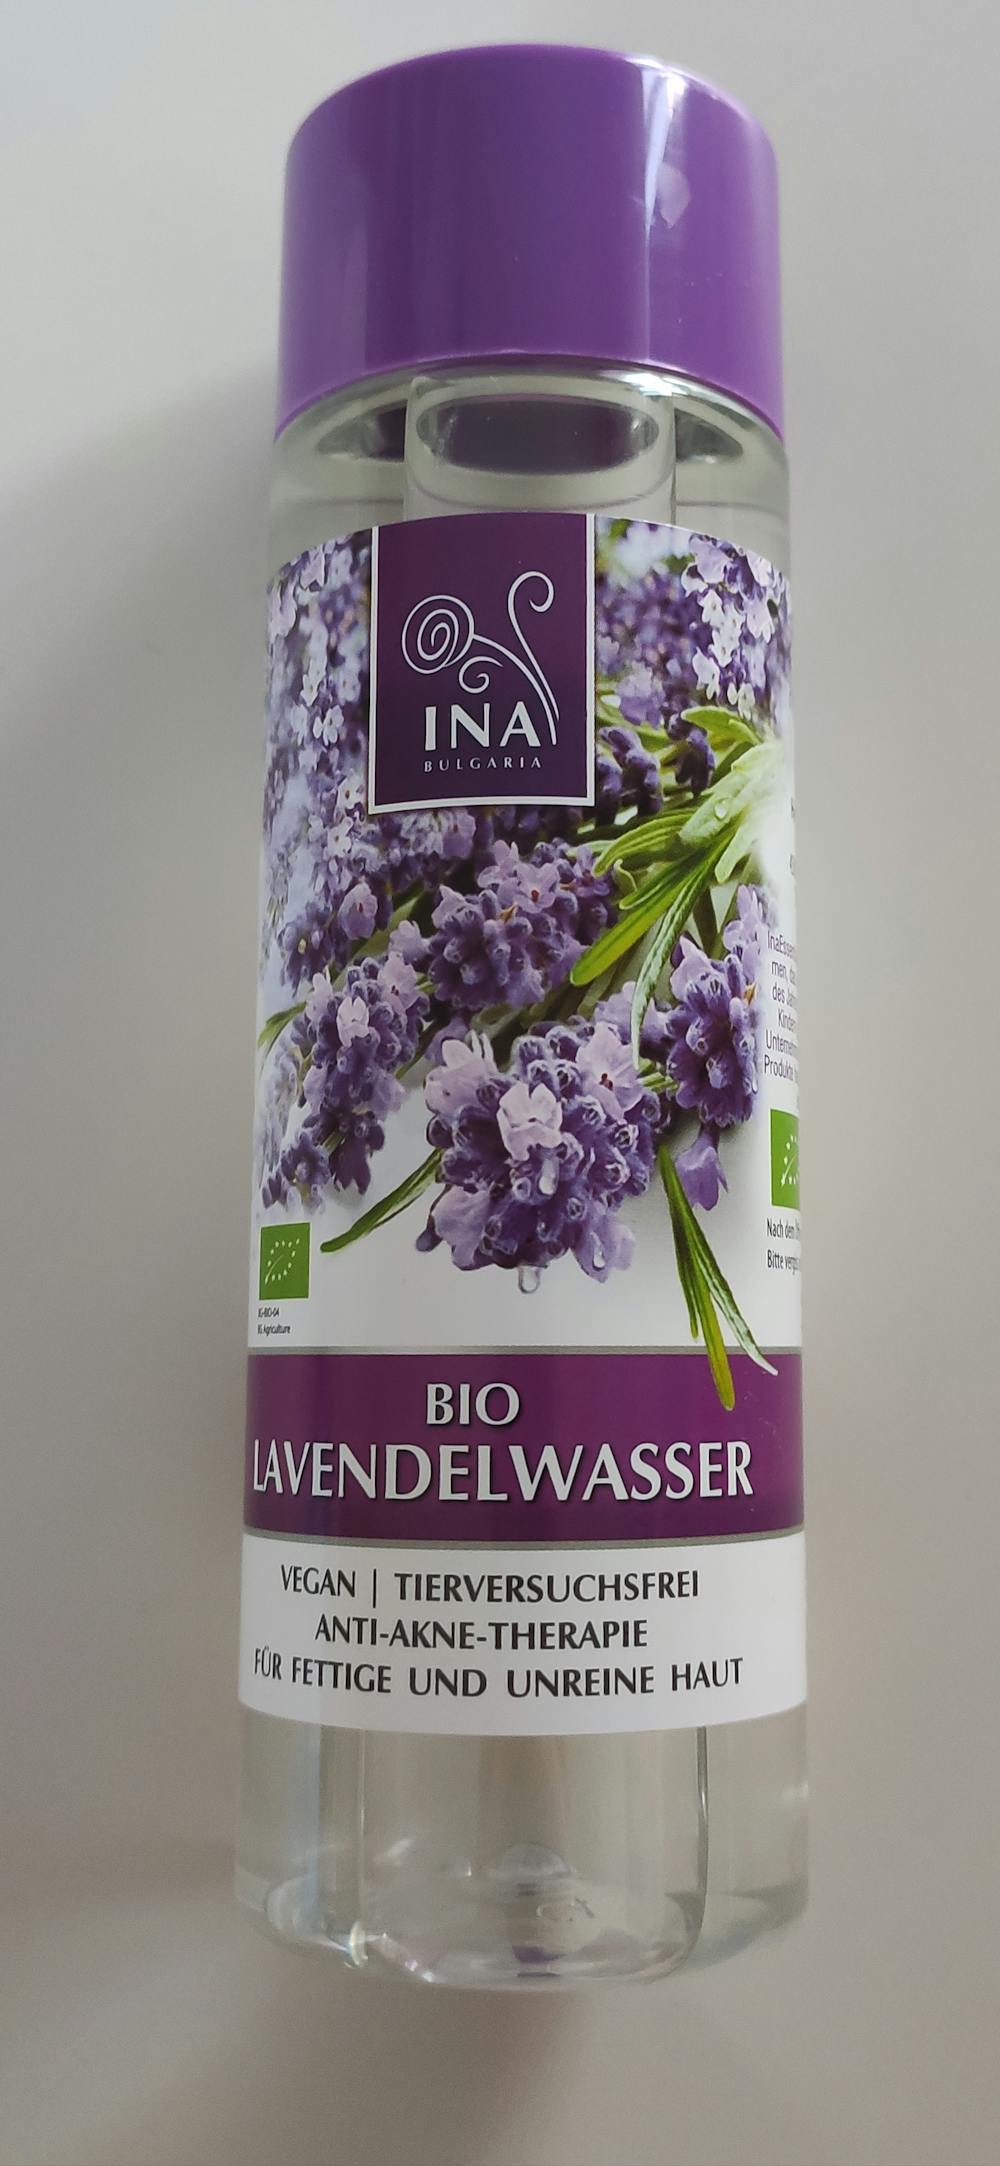 Bio Lavendelwasser für fettige Haut mit Anti-Akne-Effekt (Hydrolat)